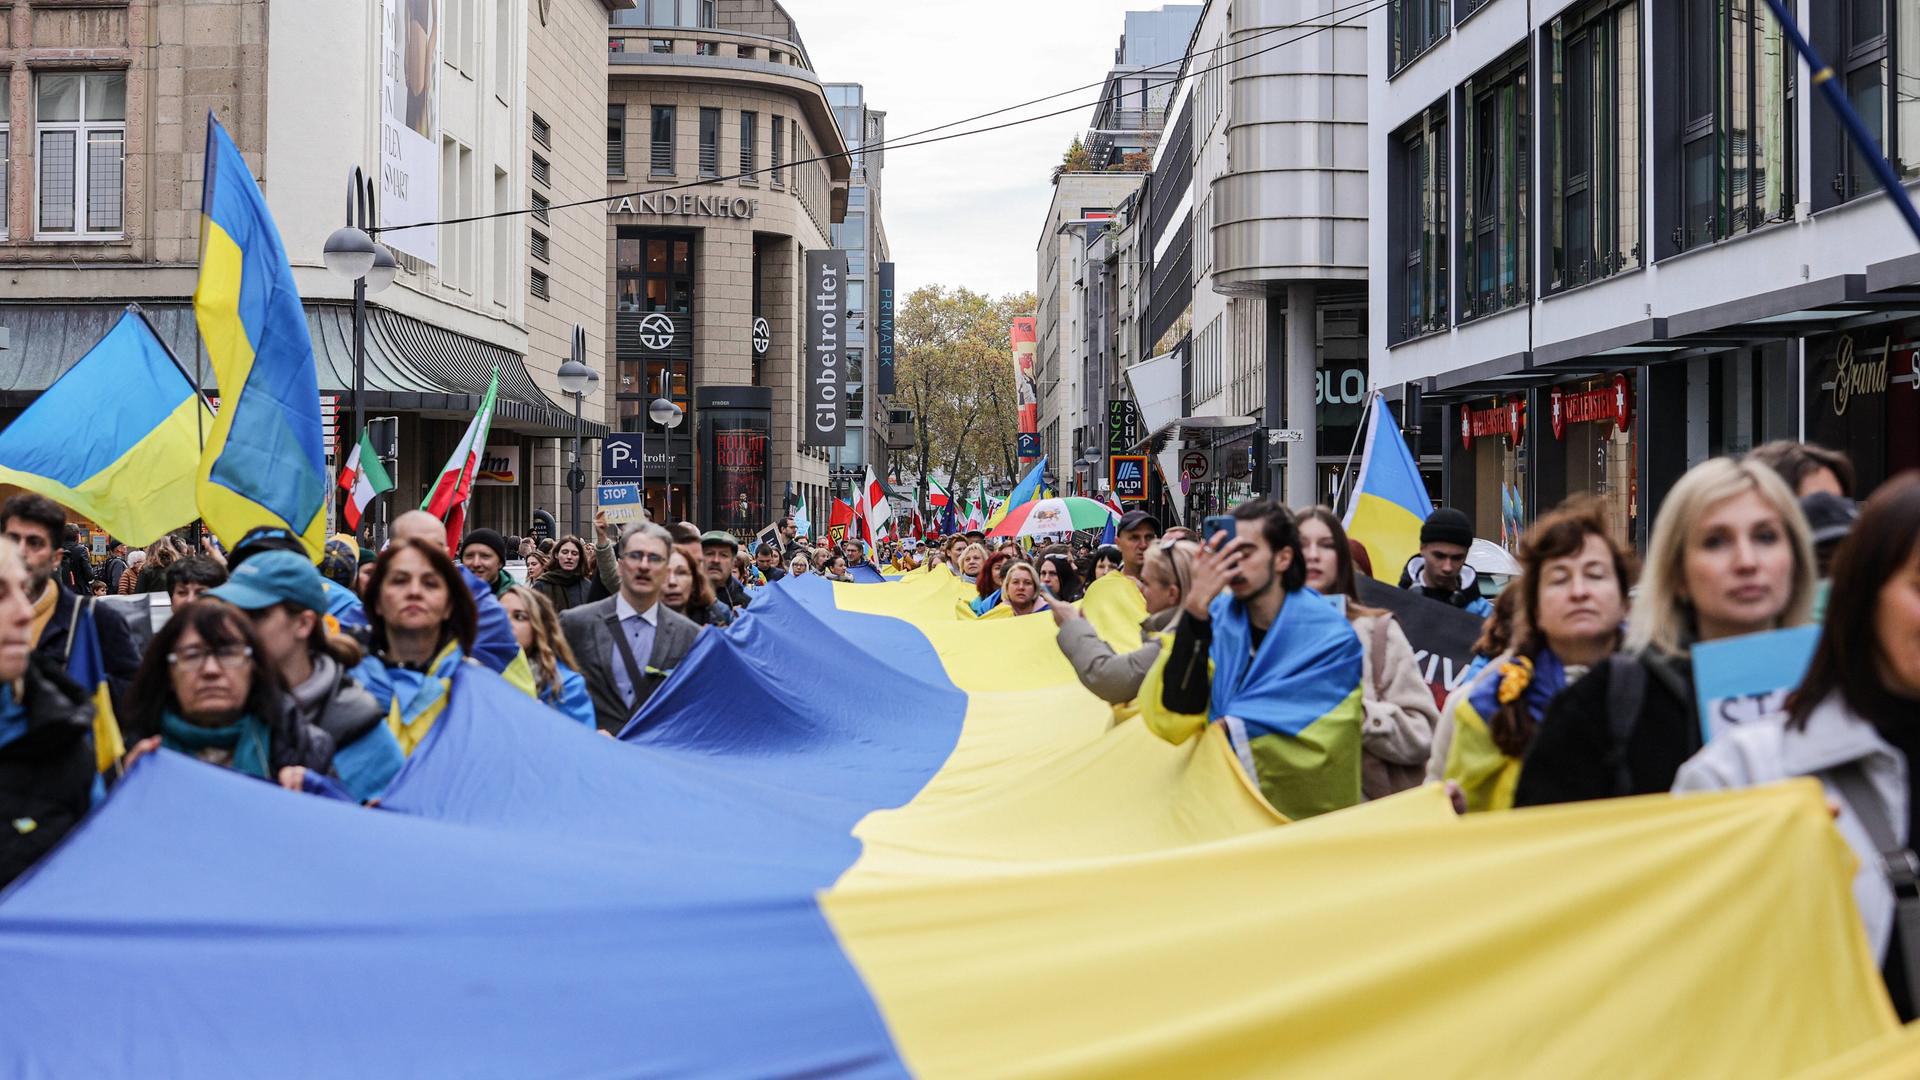 Tausende demonstrieren in Köln für Menschenrechte, Gleichberechtigung und gegen Krieg. Demonstrierende tragen eine große Ukraine-Fahne. (05.11.2022)